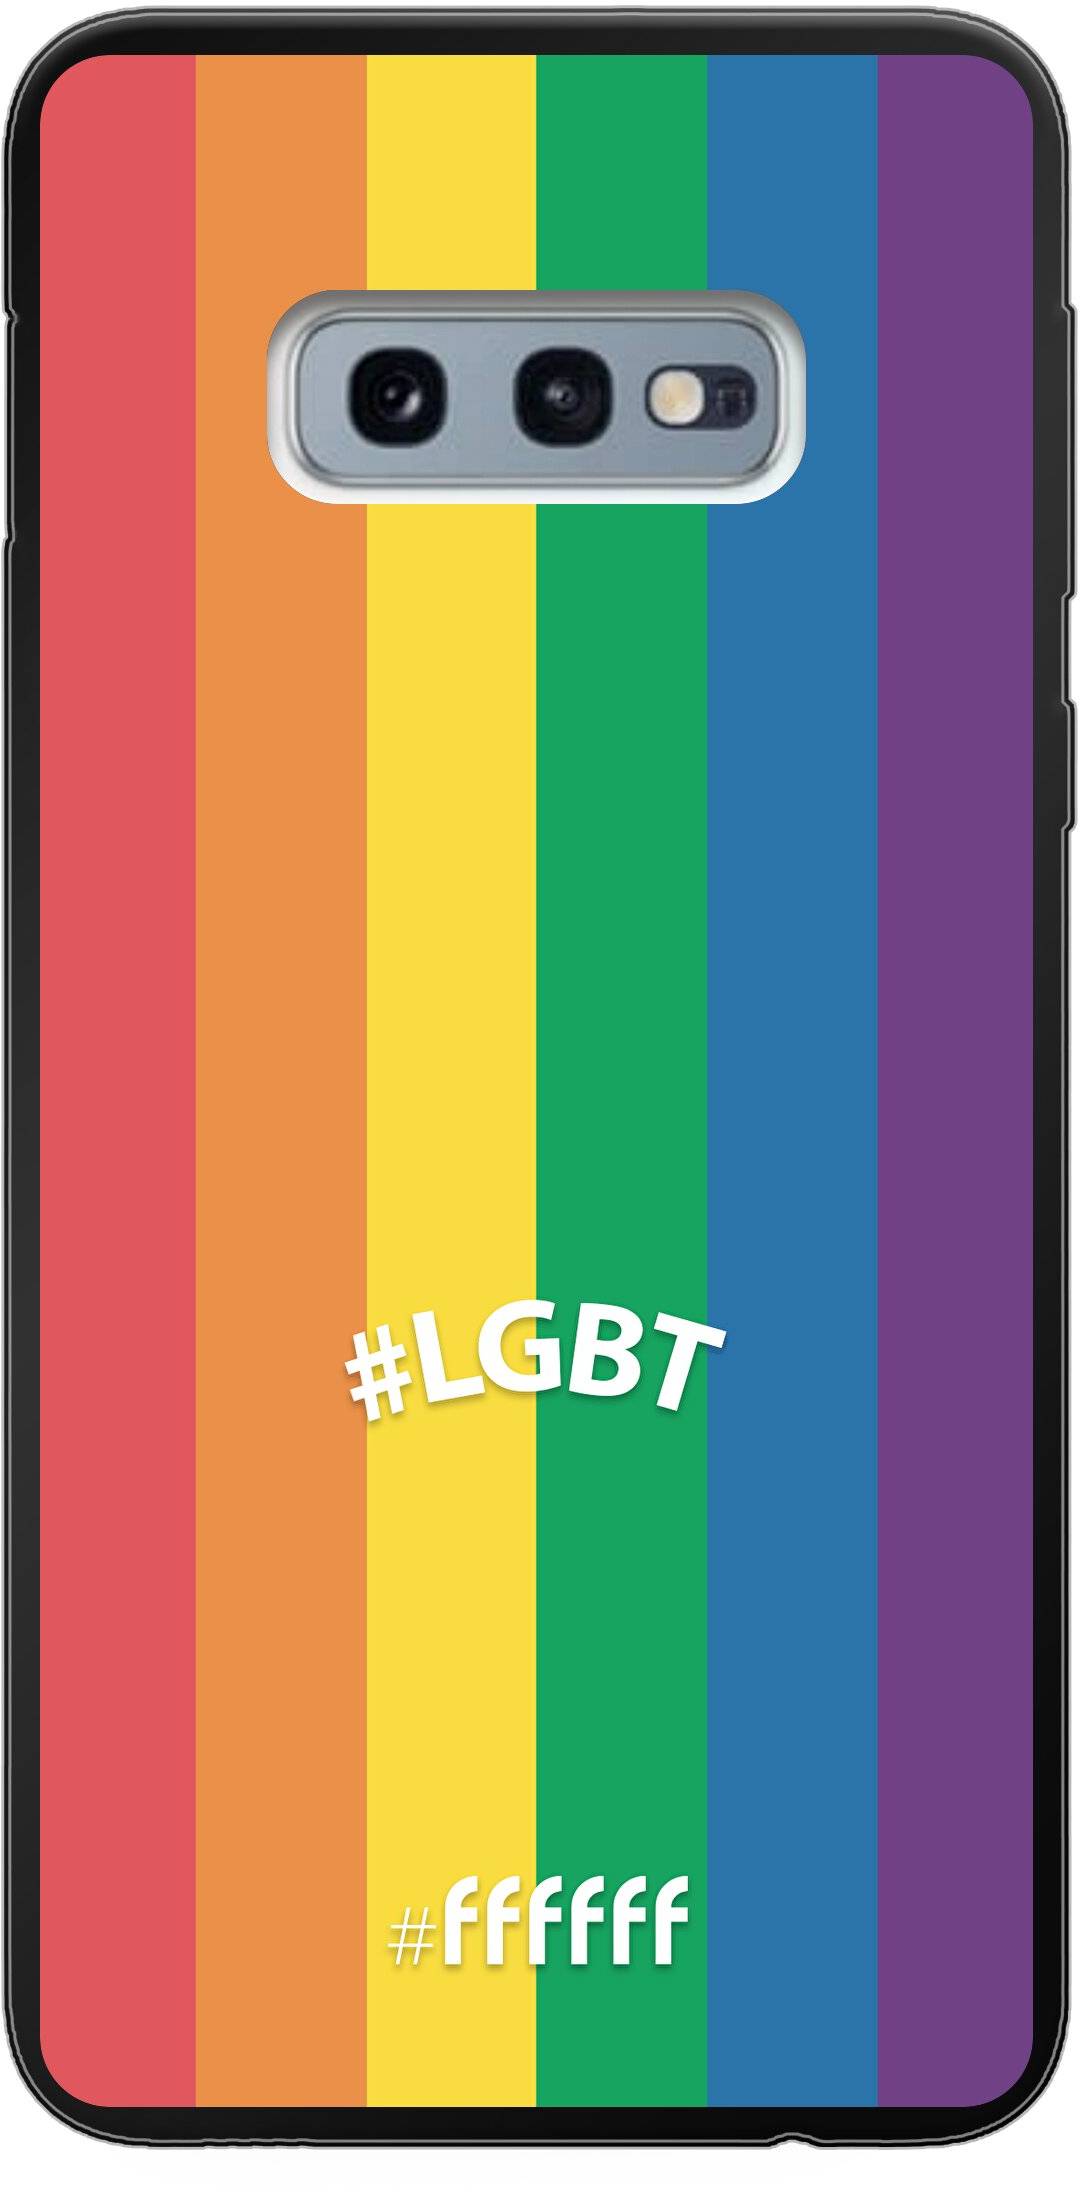 #LGBT - #LGBT Galaxy S10e